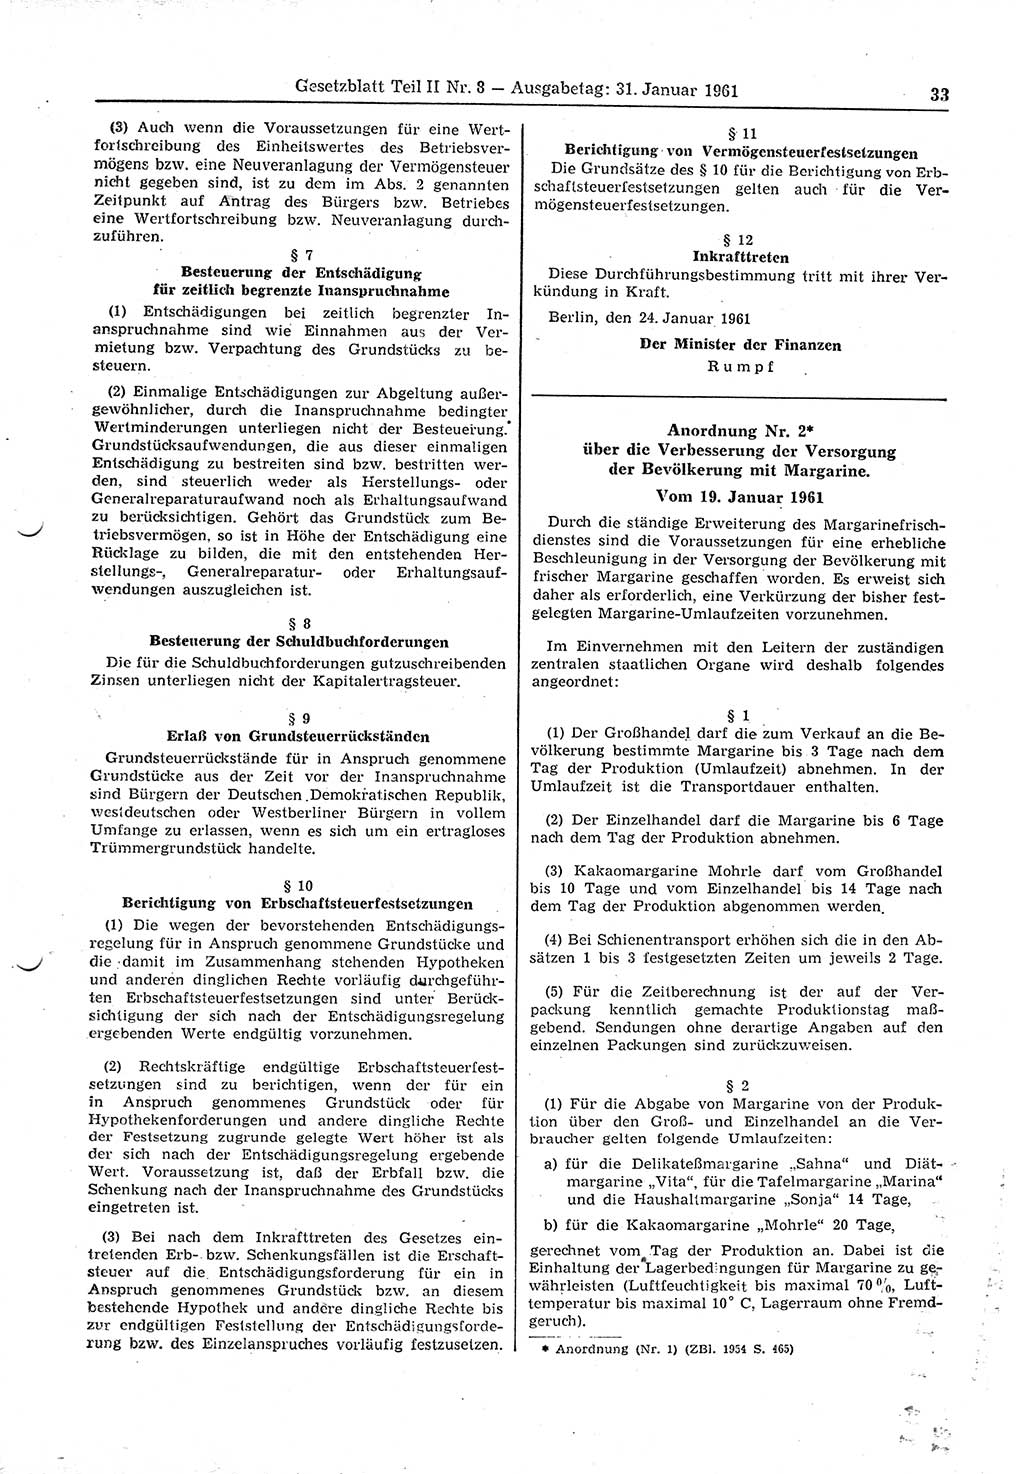 Gesetzblatt (GBl.) der Deutschen Demokratischen Republik (DDR) Teil ⅠⅠ 1961, Seite 33 (GBl. DDR ⅠⅠ 1961, S. 33)